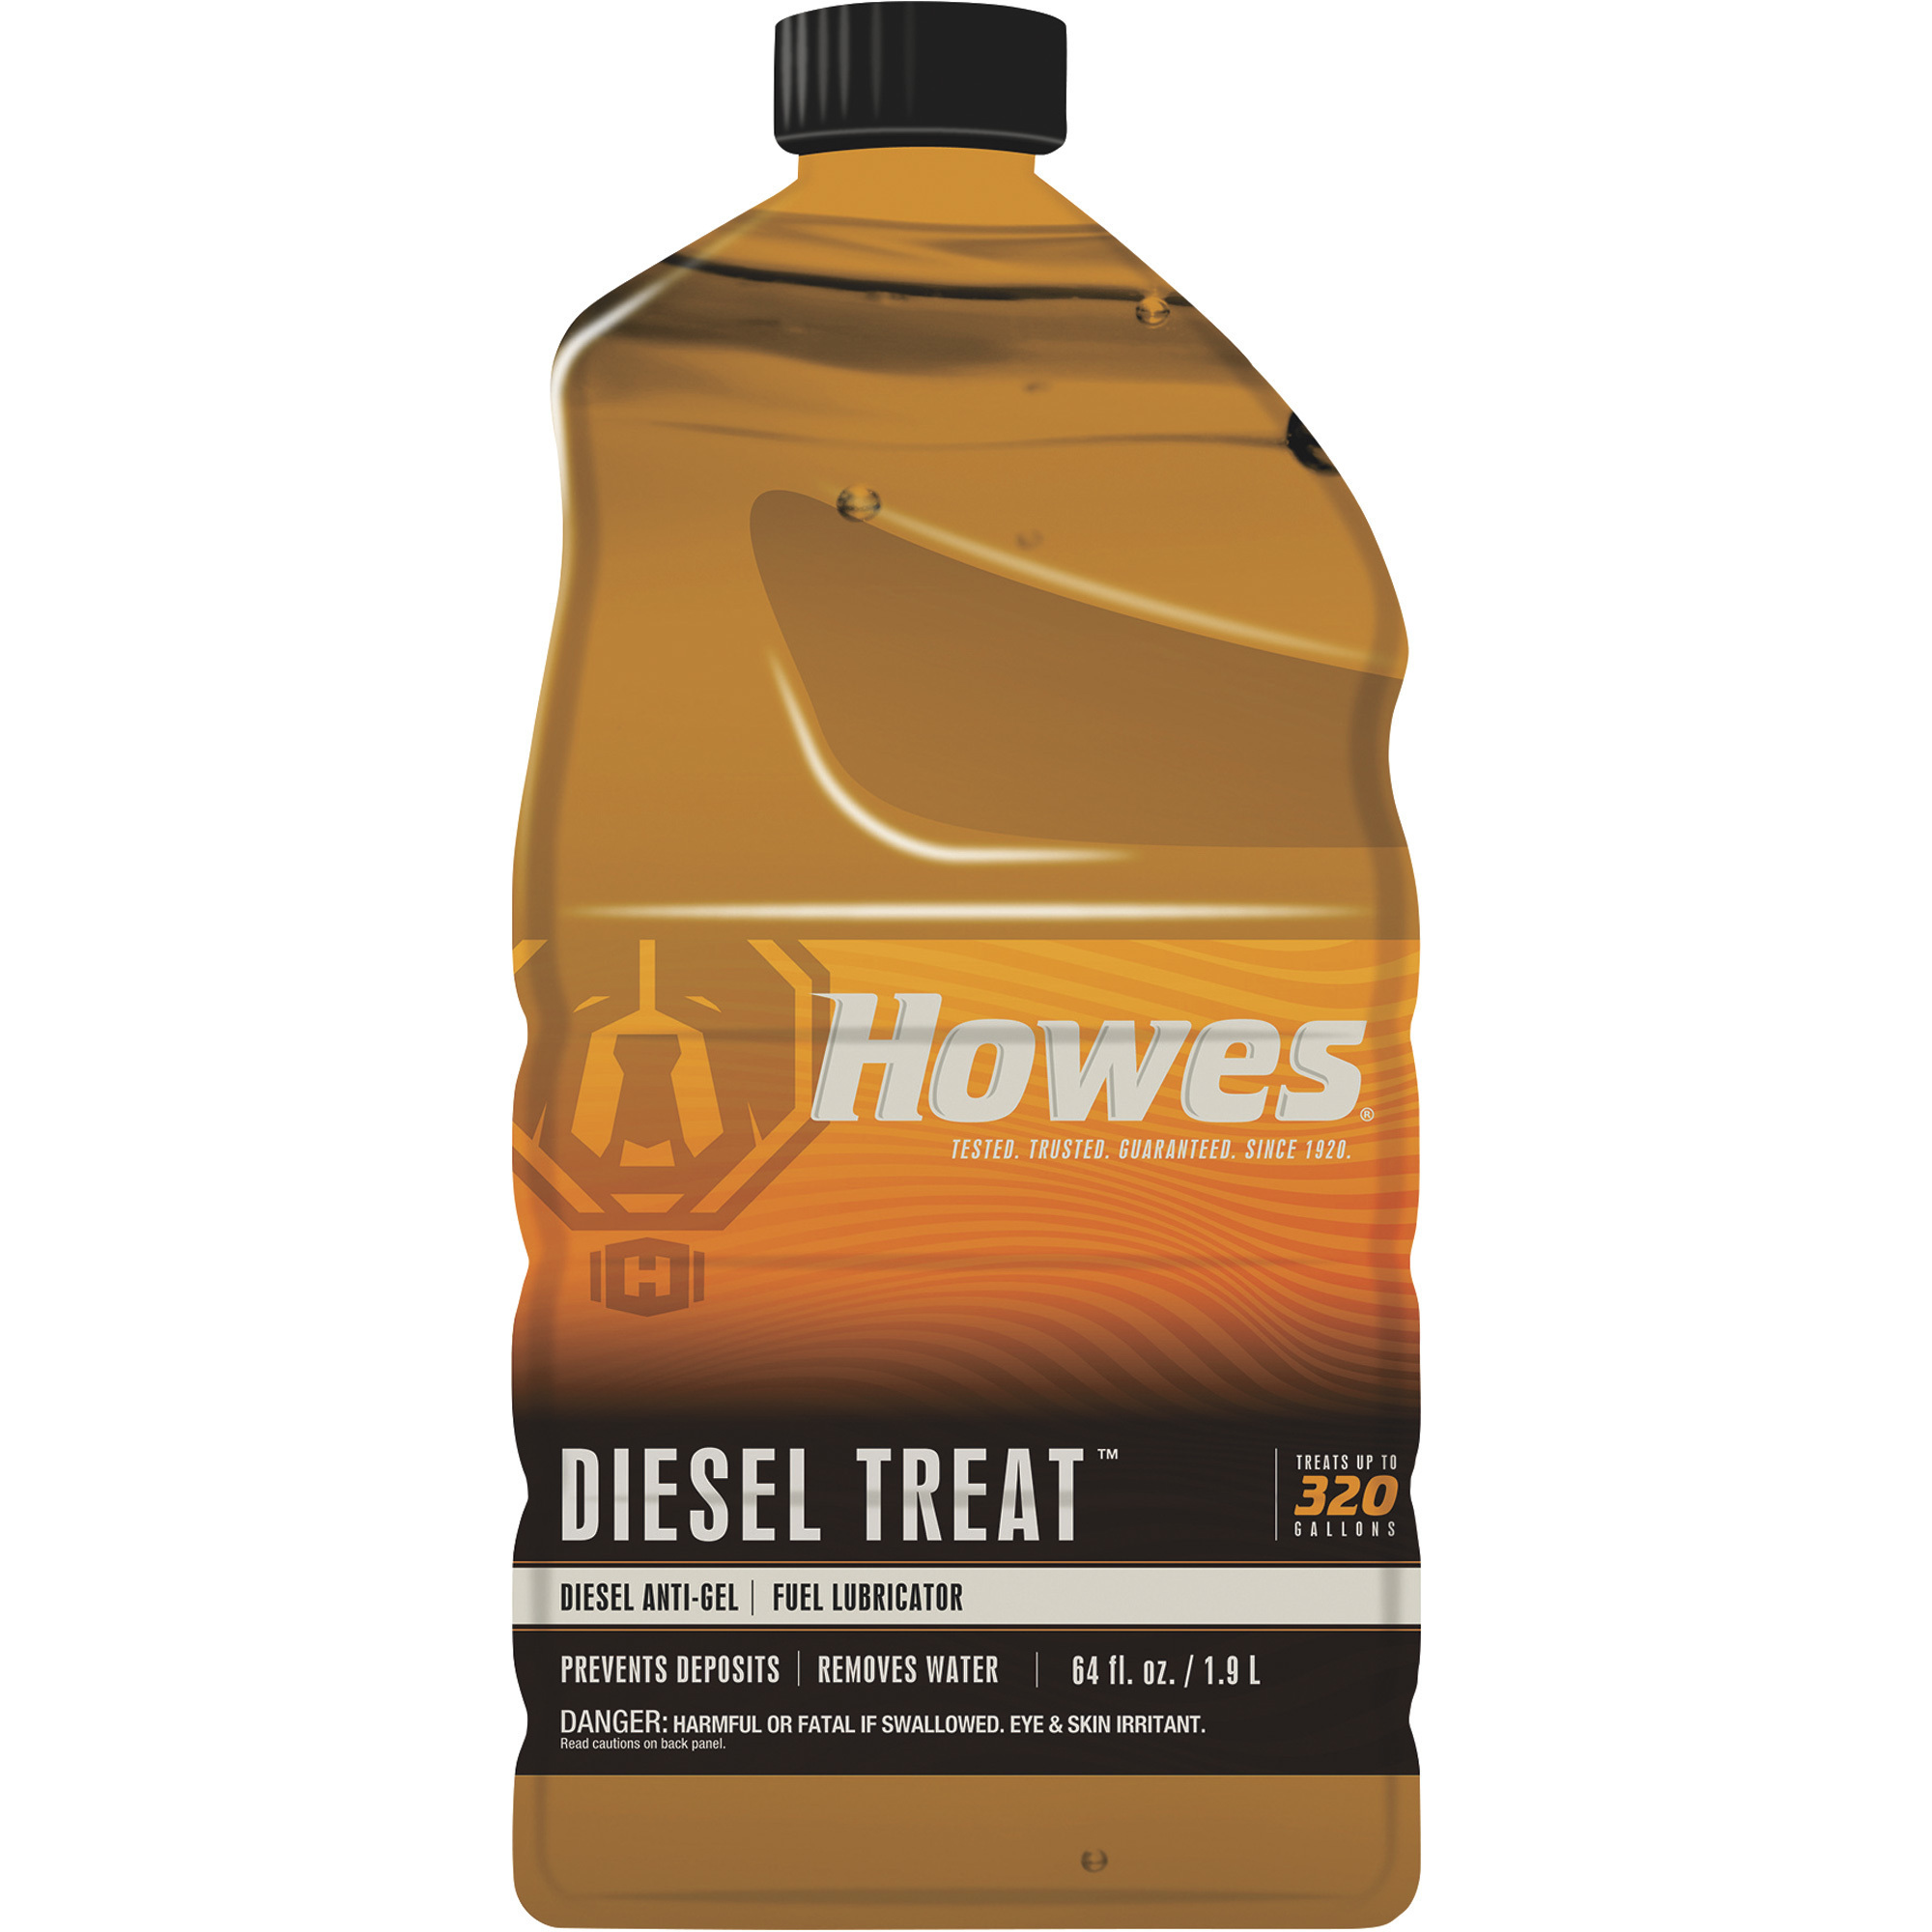 Howes Diesel Treat Fuel Lubricator â 1/2-Gallon Jug, Model HOWE103060